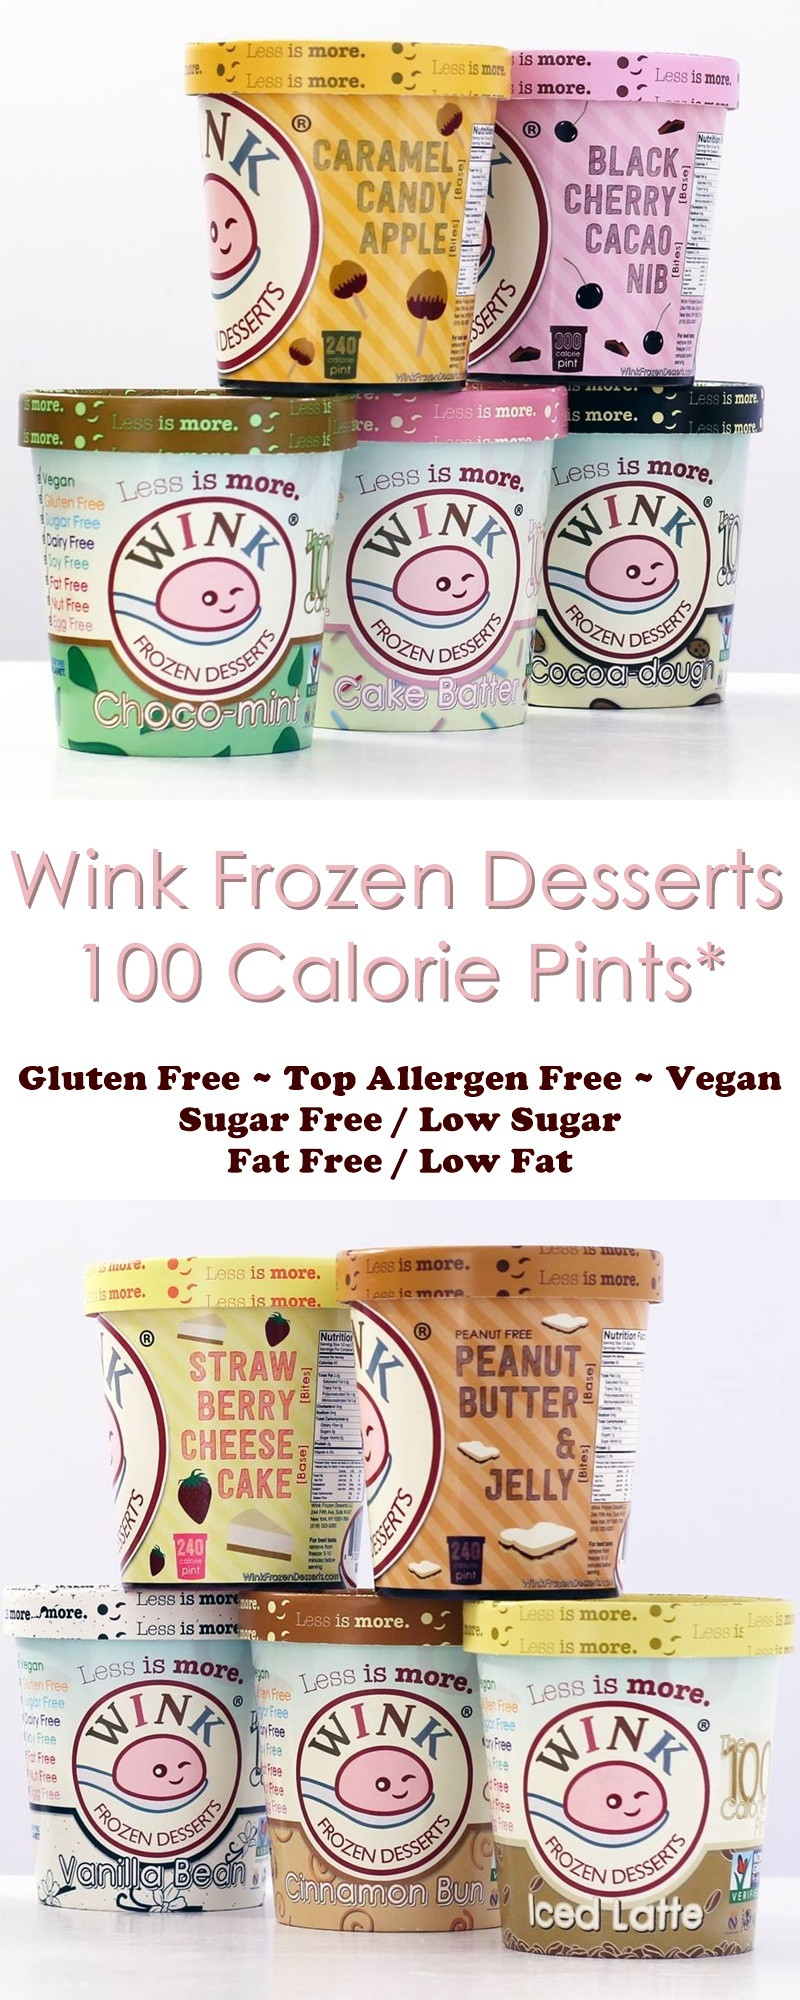 Wink Frozen Desserts Review
 Wink Frozen Desserts Review The 100 Calorie Pints